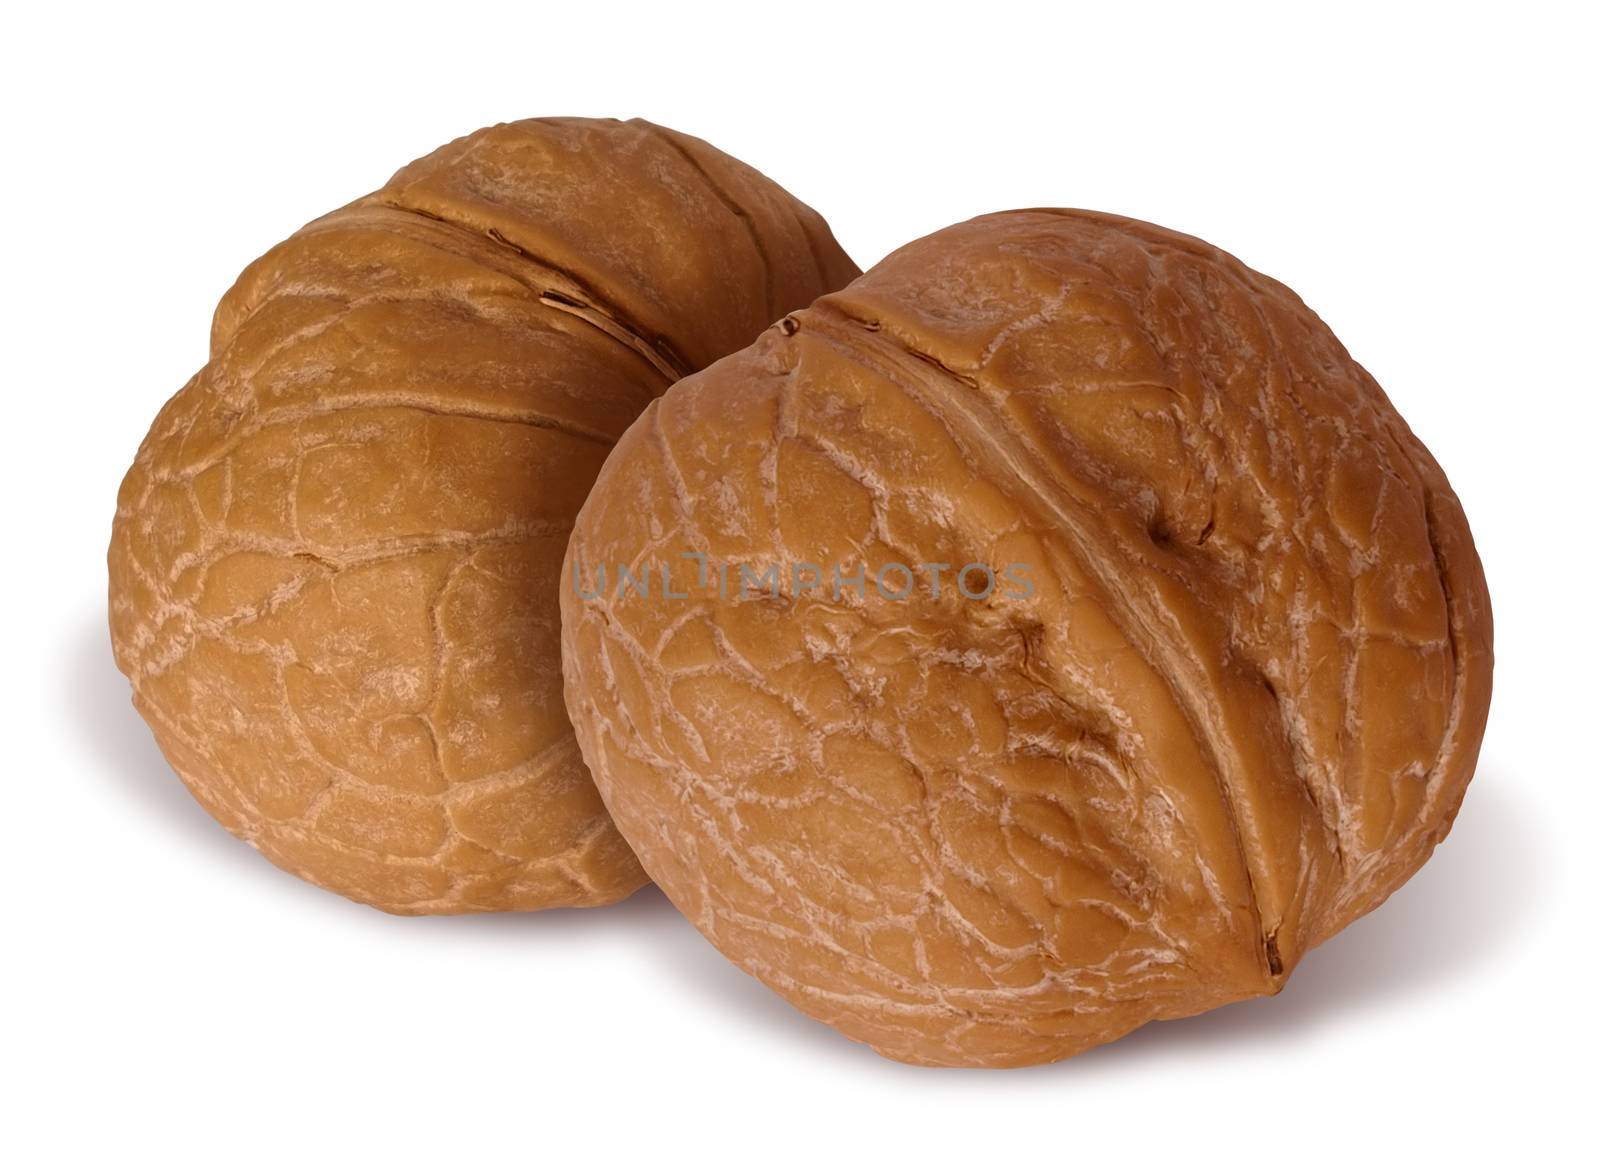 walnuts by Venakr